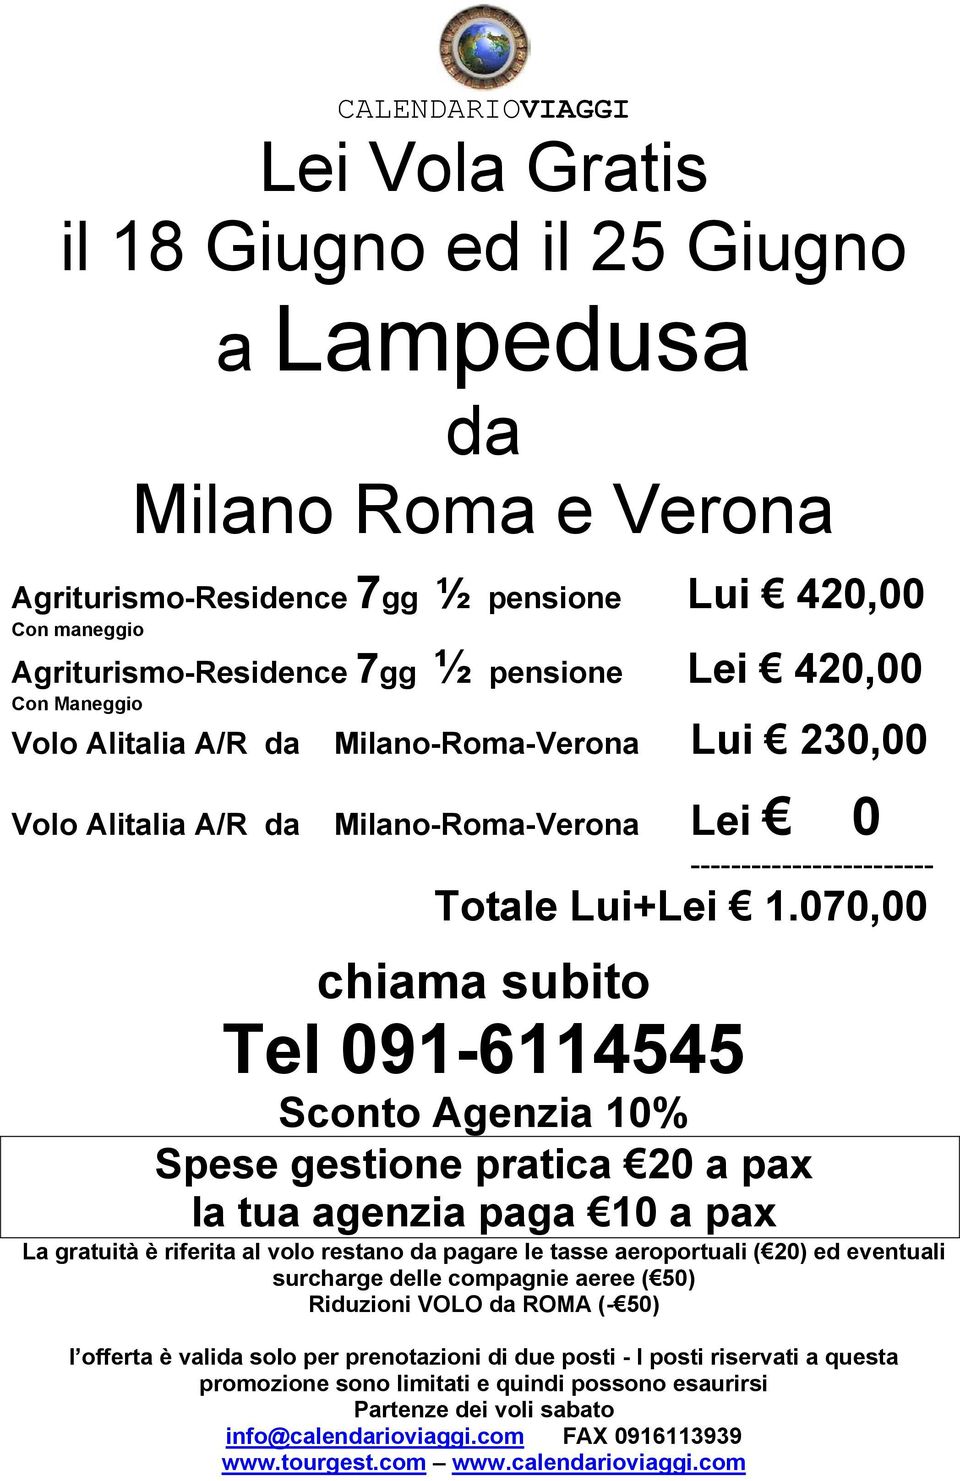 Con Maneggio Volo Alitalia A/R Milano-Roma-Verona Lui